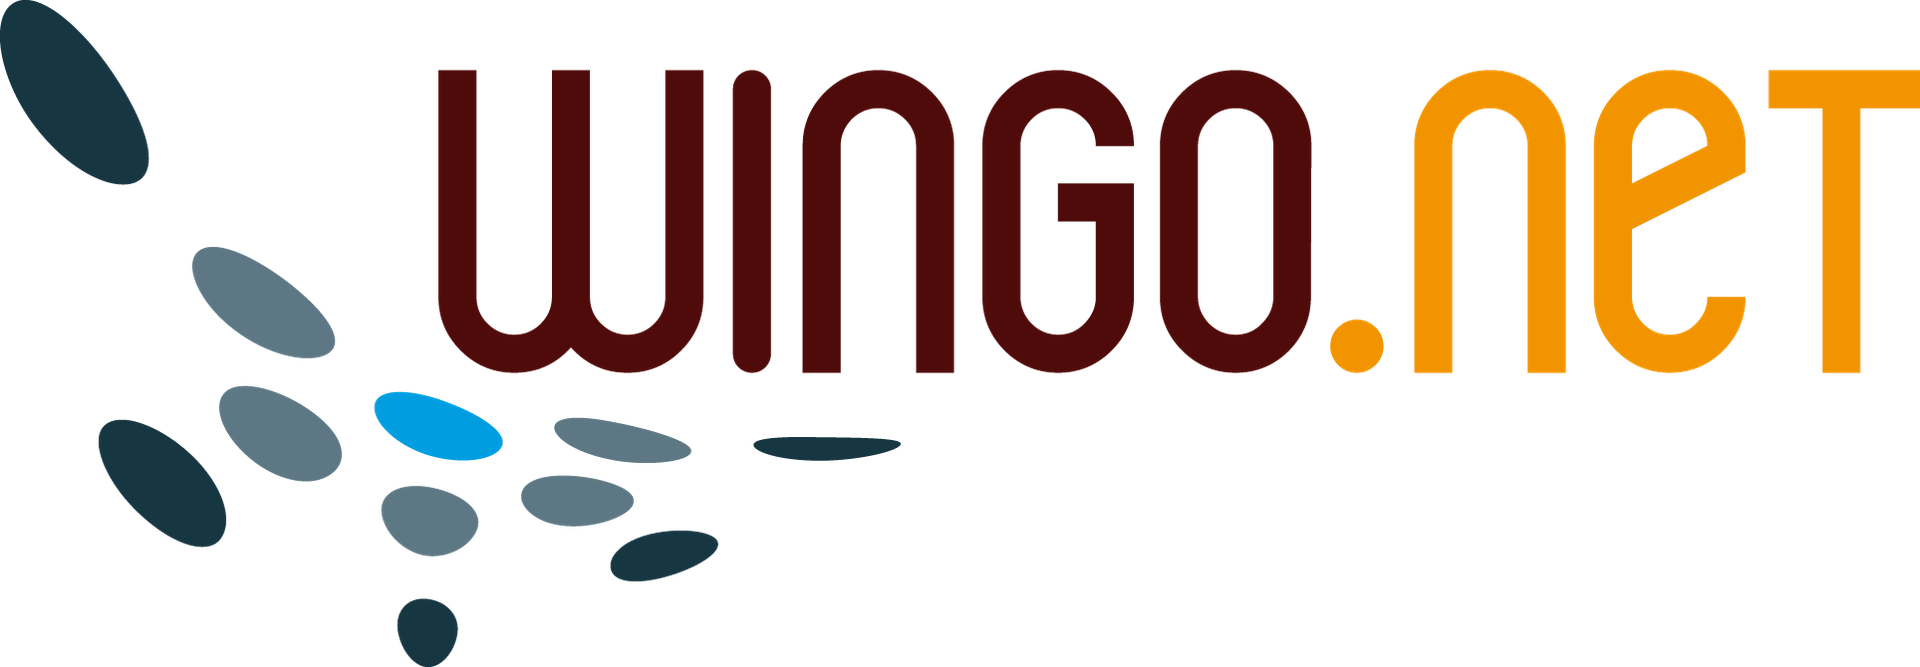 Wingo.net